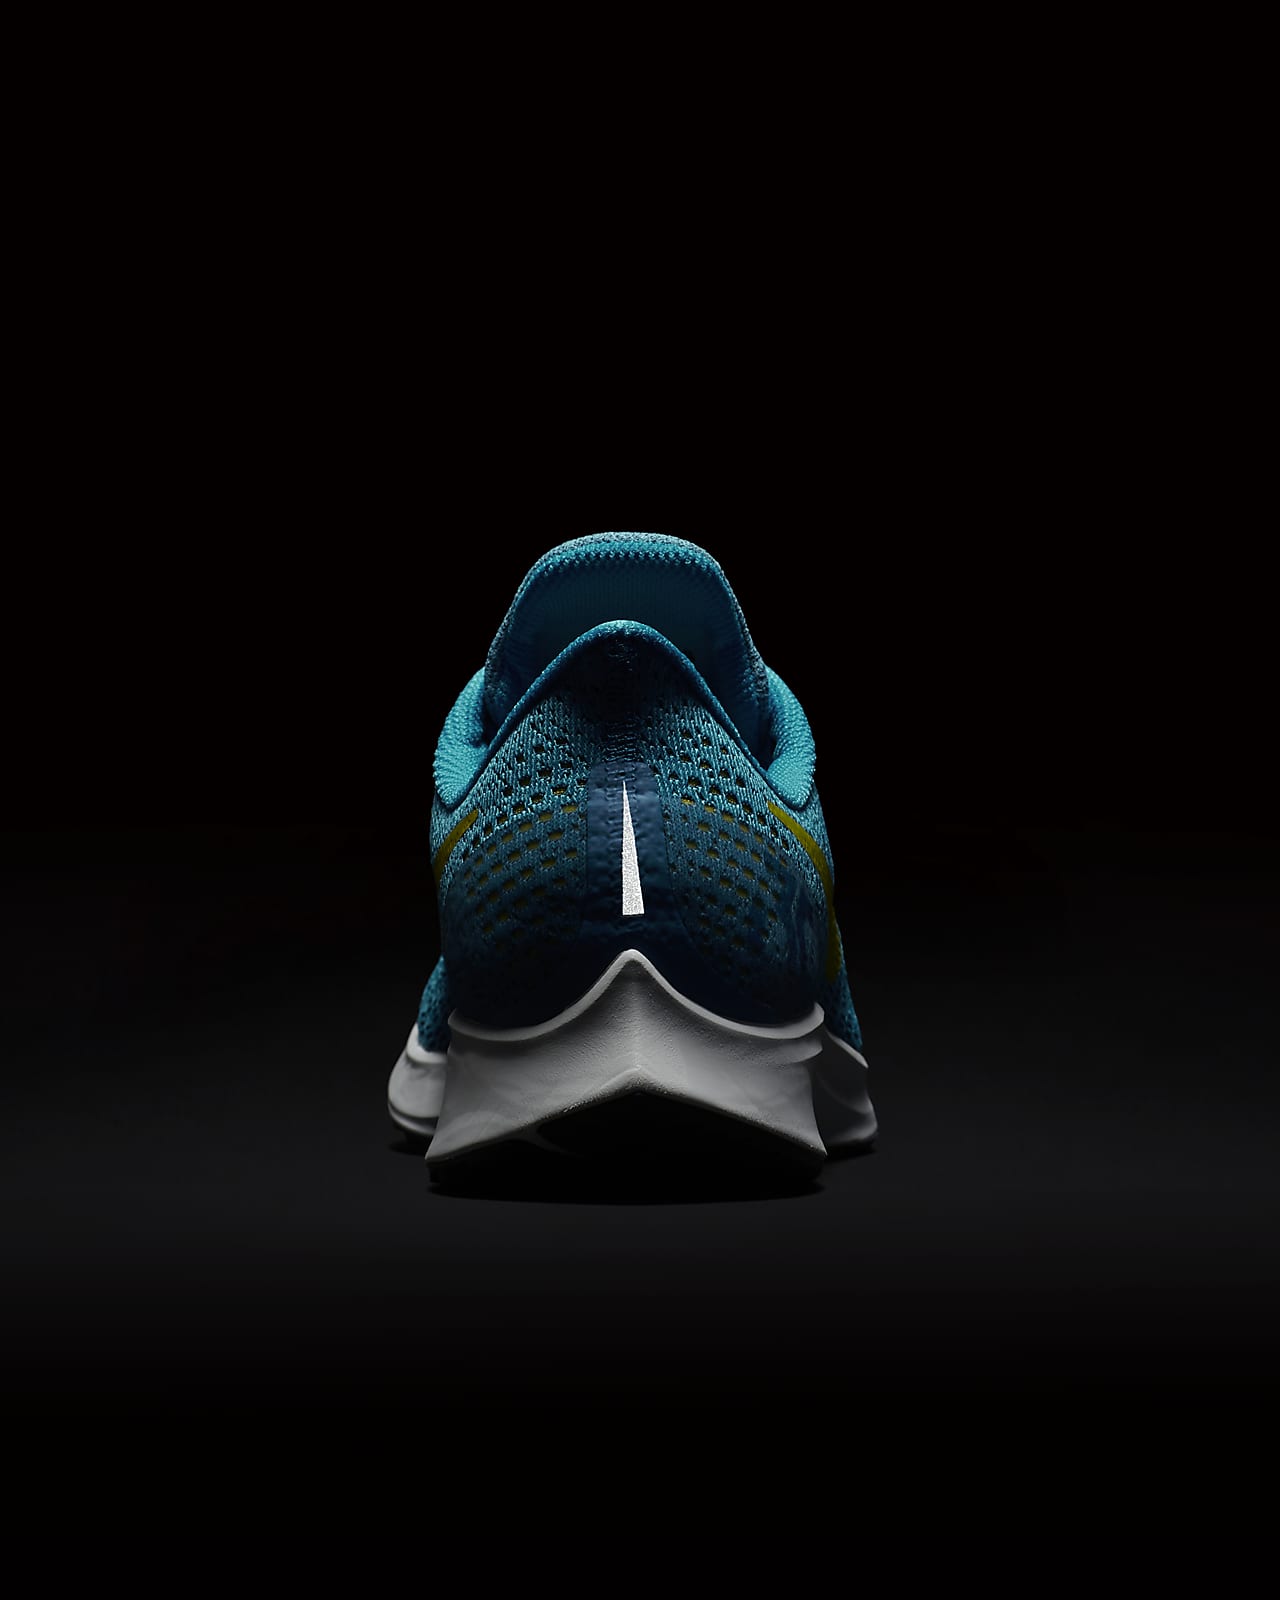 Lake Taupo vertraging genoeg Nike Air Zoom Pegasus 35 Men's Running Shoe. Nike PH